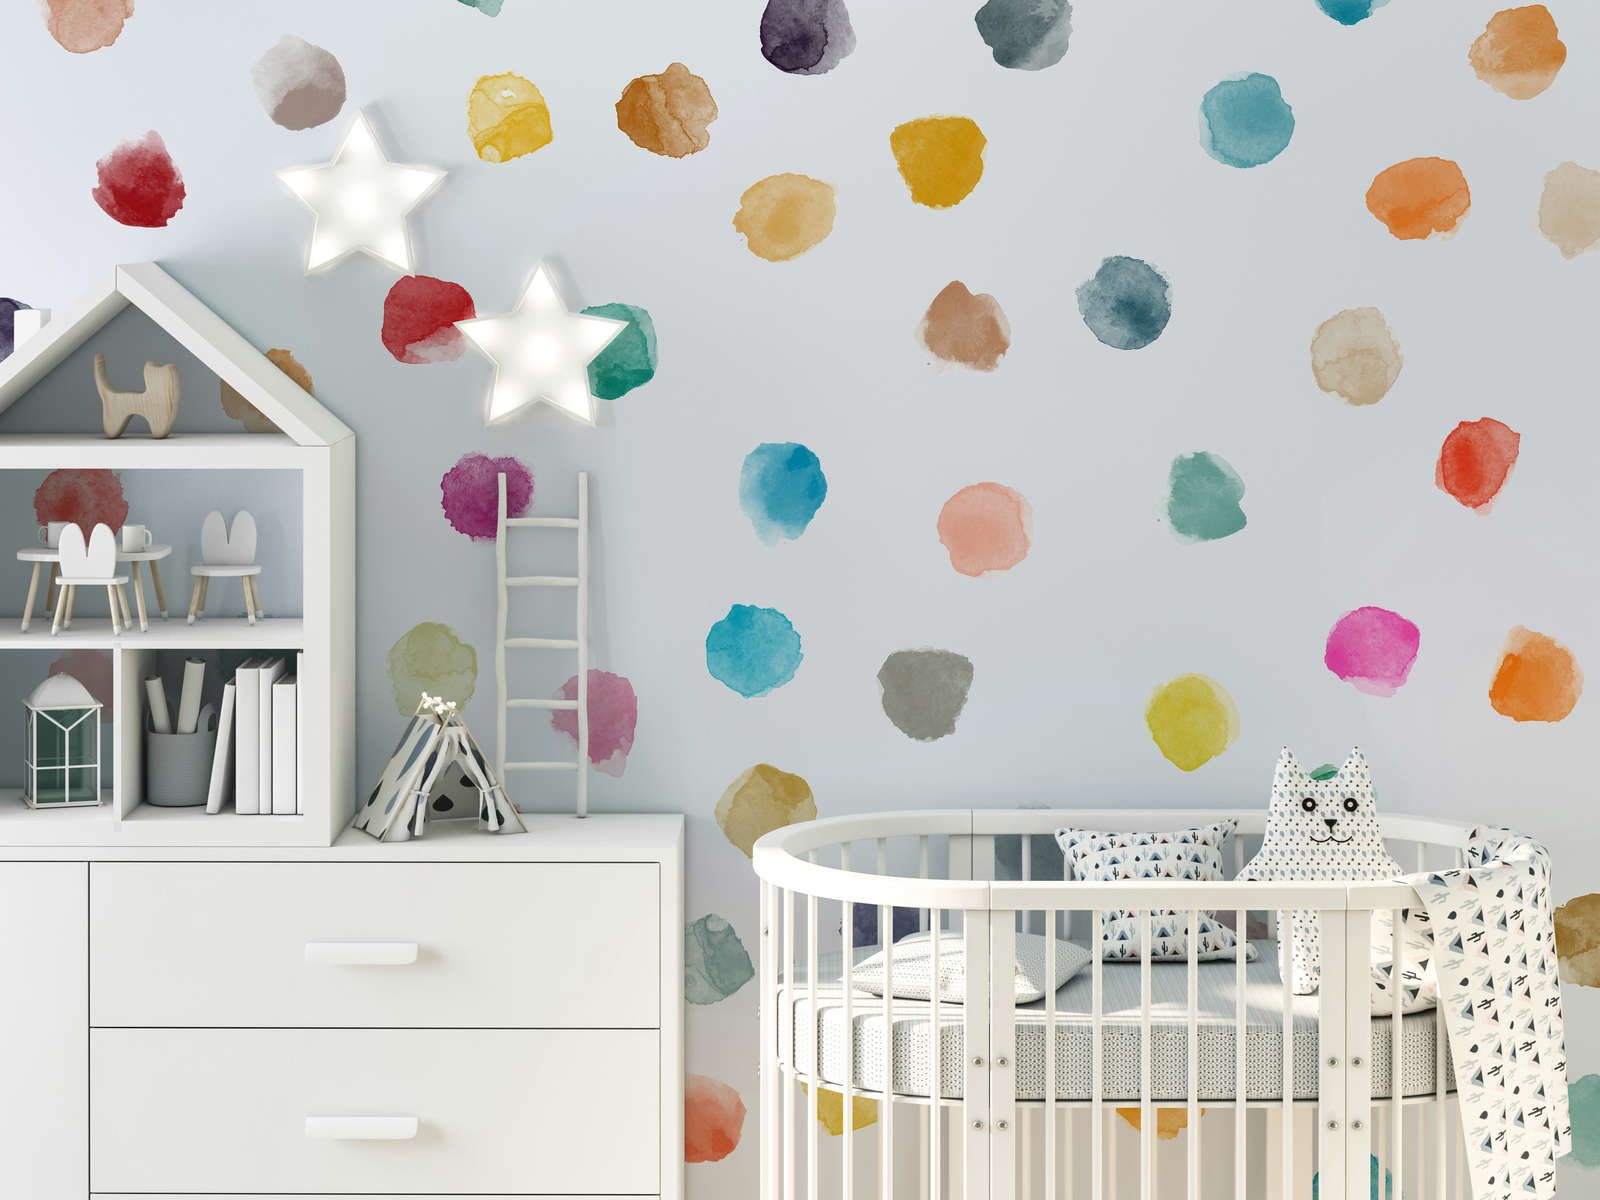             Fototapete fürs Kinderzimmer mit bunten Punkten – Glattes & mattes Vlies
        